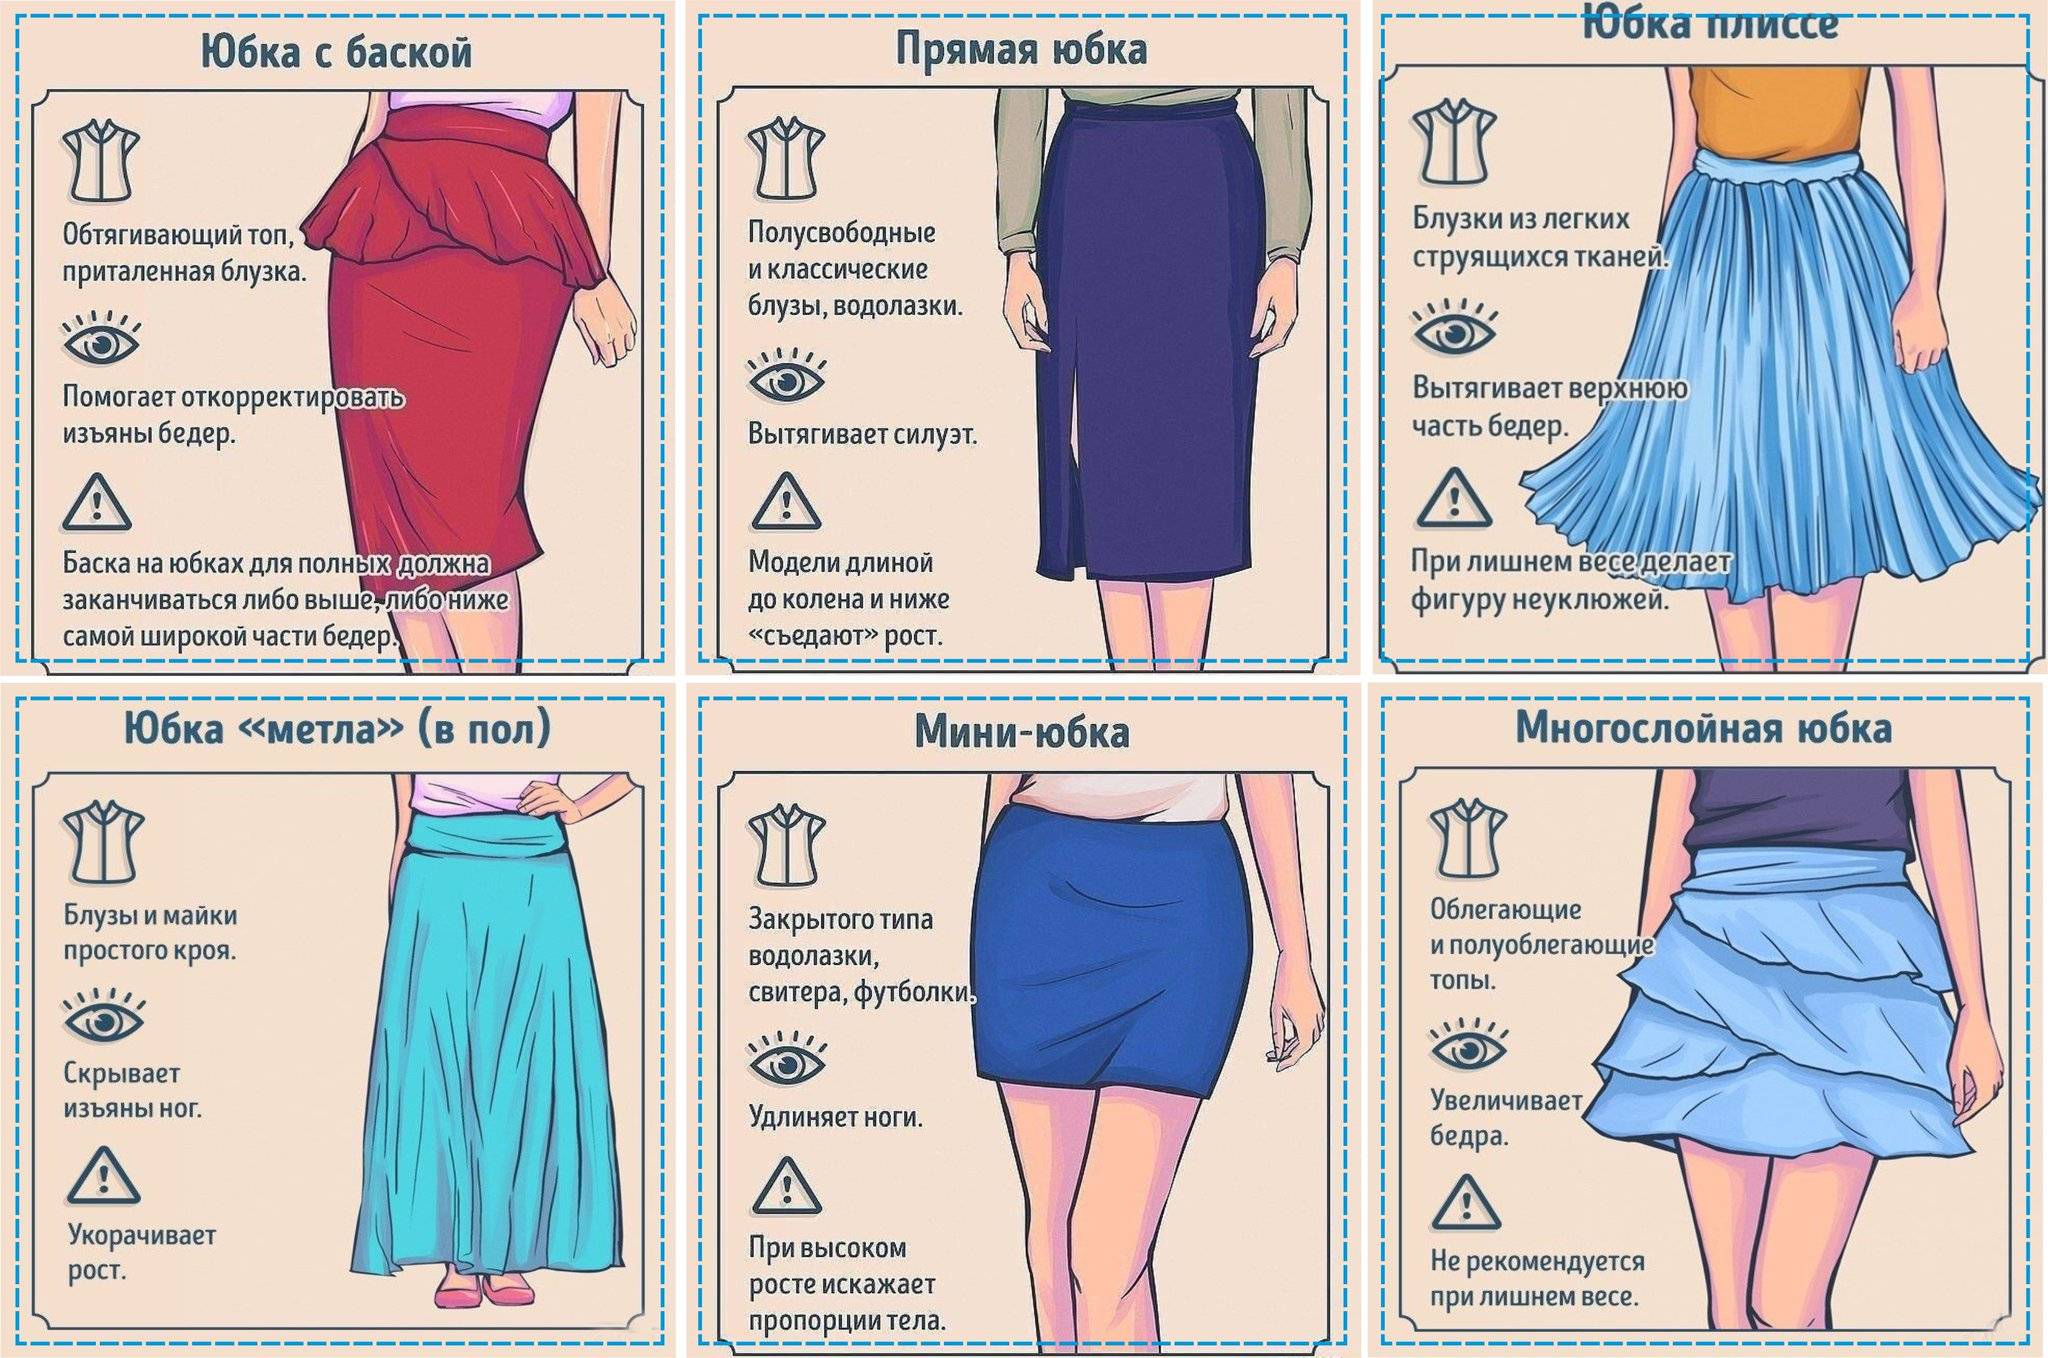 Модные длинные юбки – лето 2020: тренды сезона, новинки, фото образов